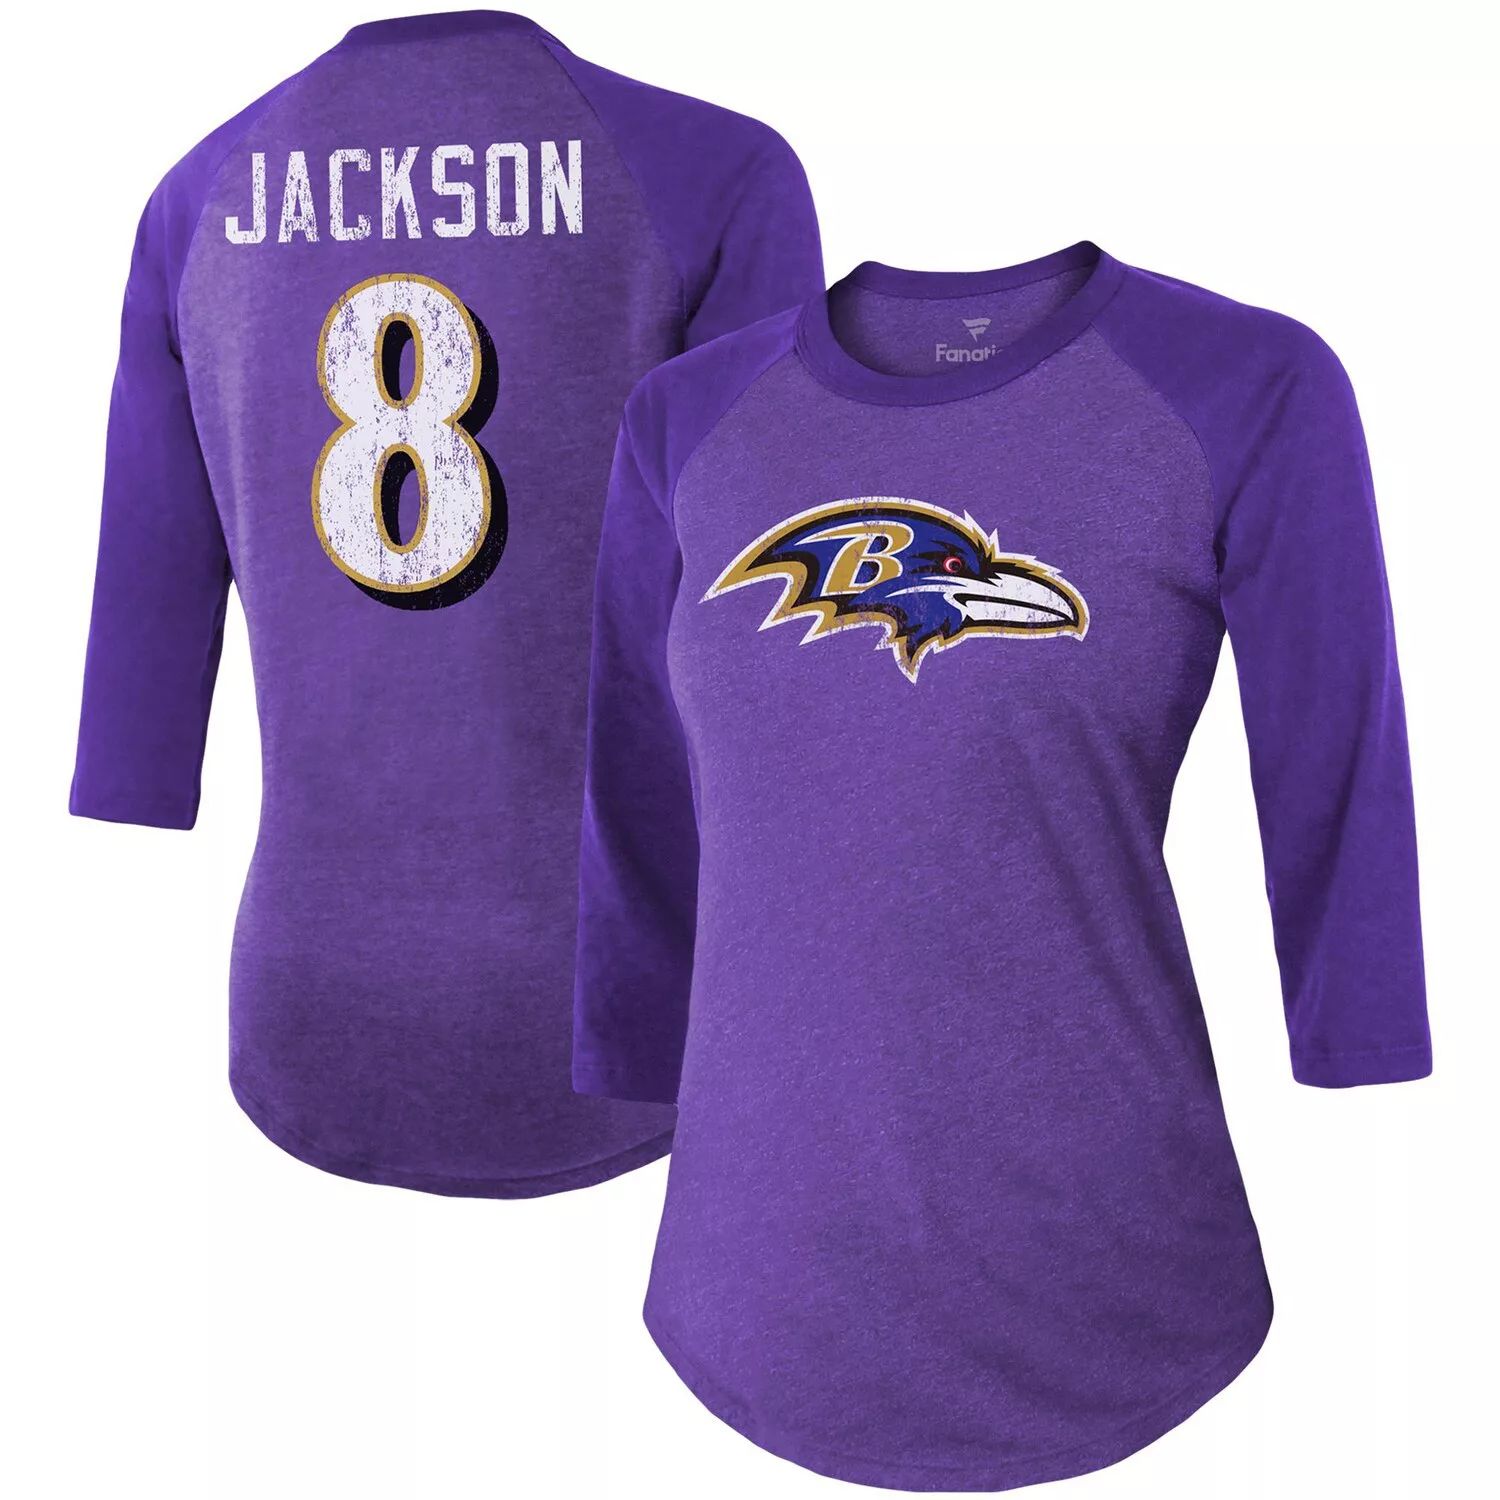 Женская футболка Fanatics с фирменным логотипом Lamar Jackson Purple Baltimore Ravens Team, имя и номер игрока, футболка из трехслойного реглан с рукавами 3/4 Majestic